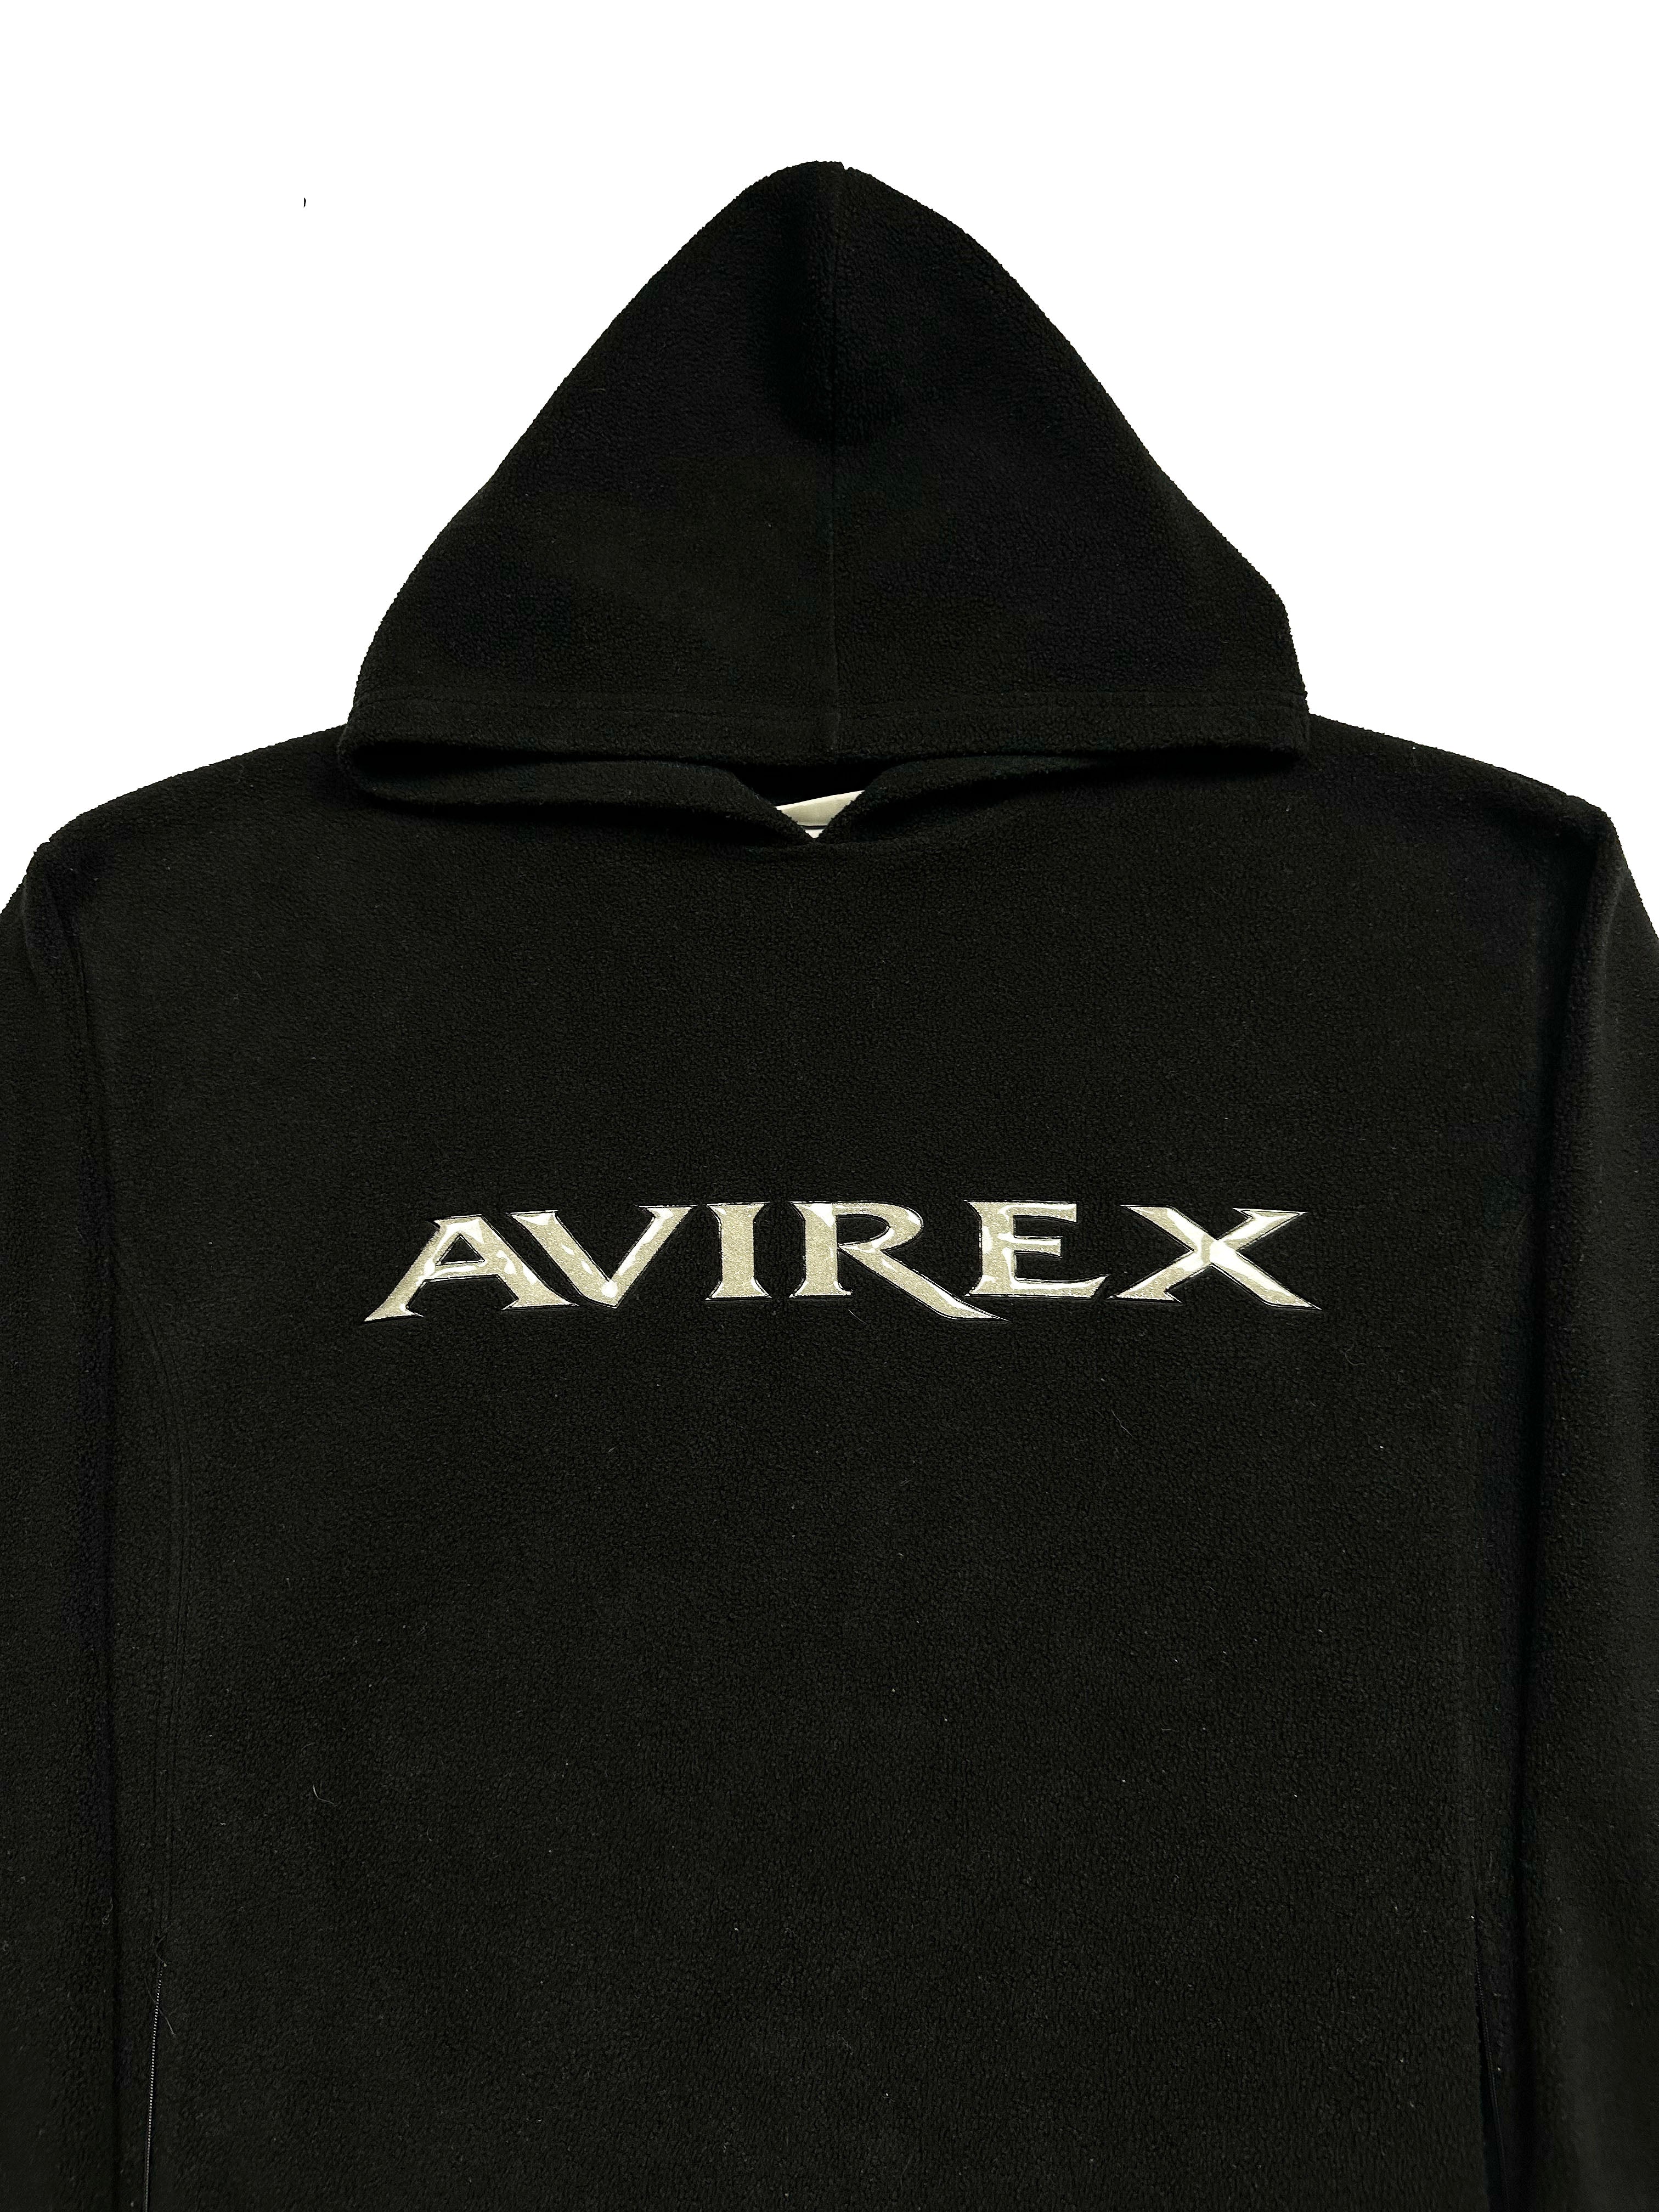 Avirex Black Fleece Hoodie 90's